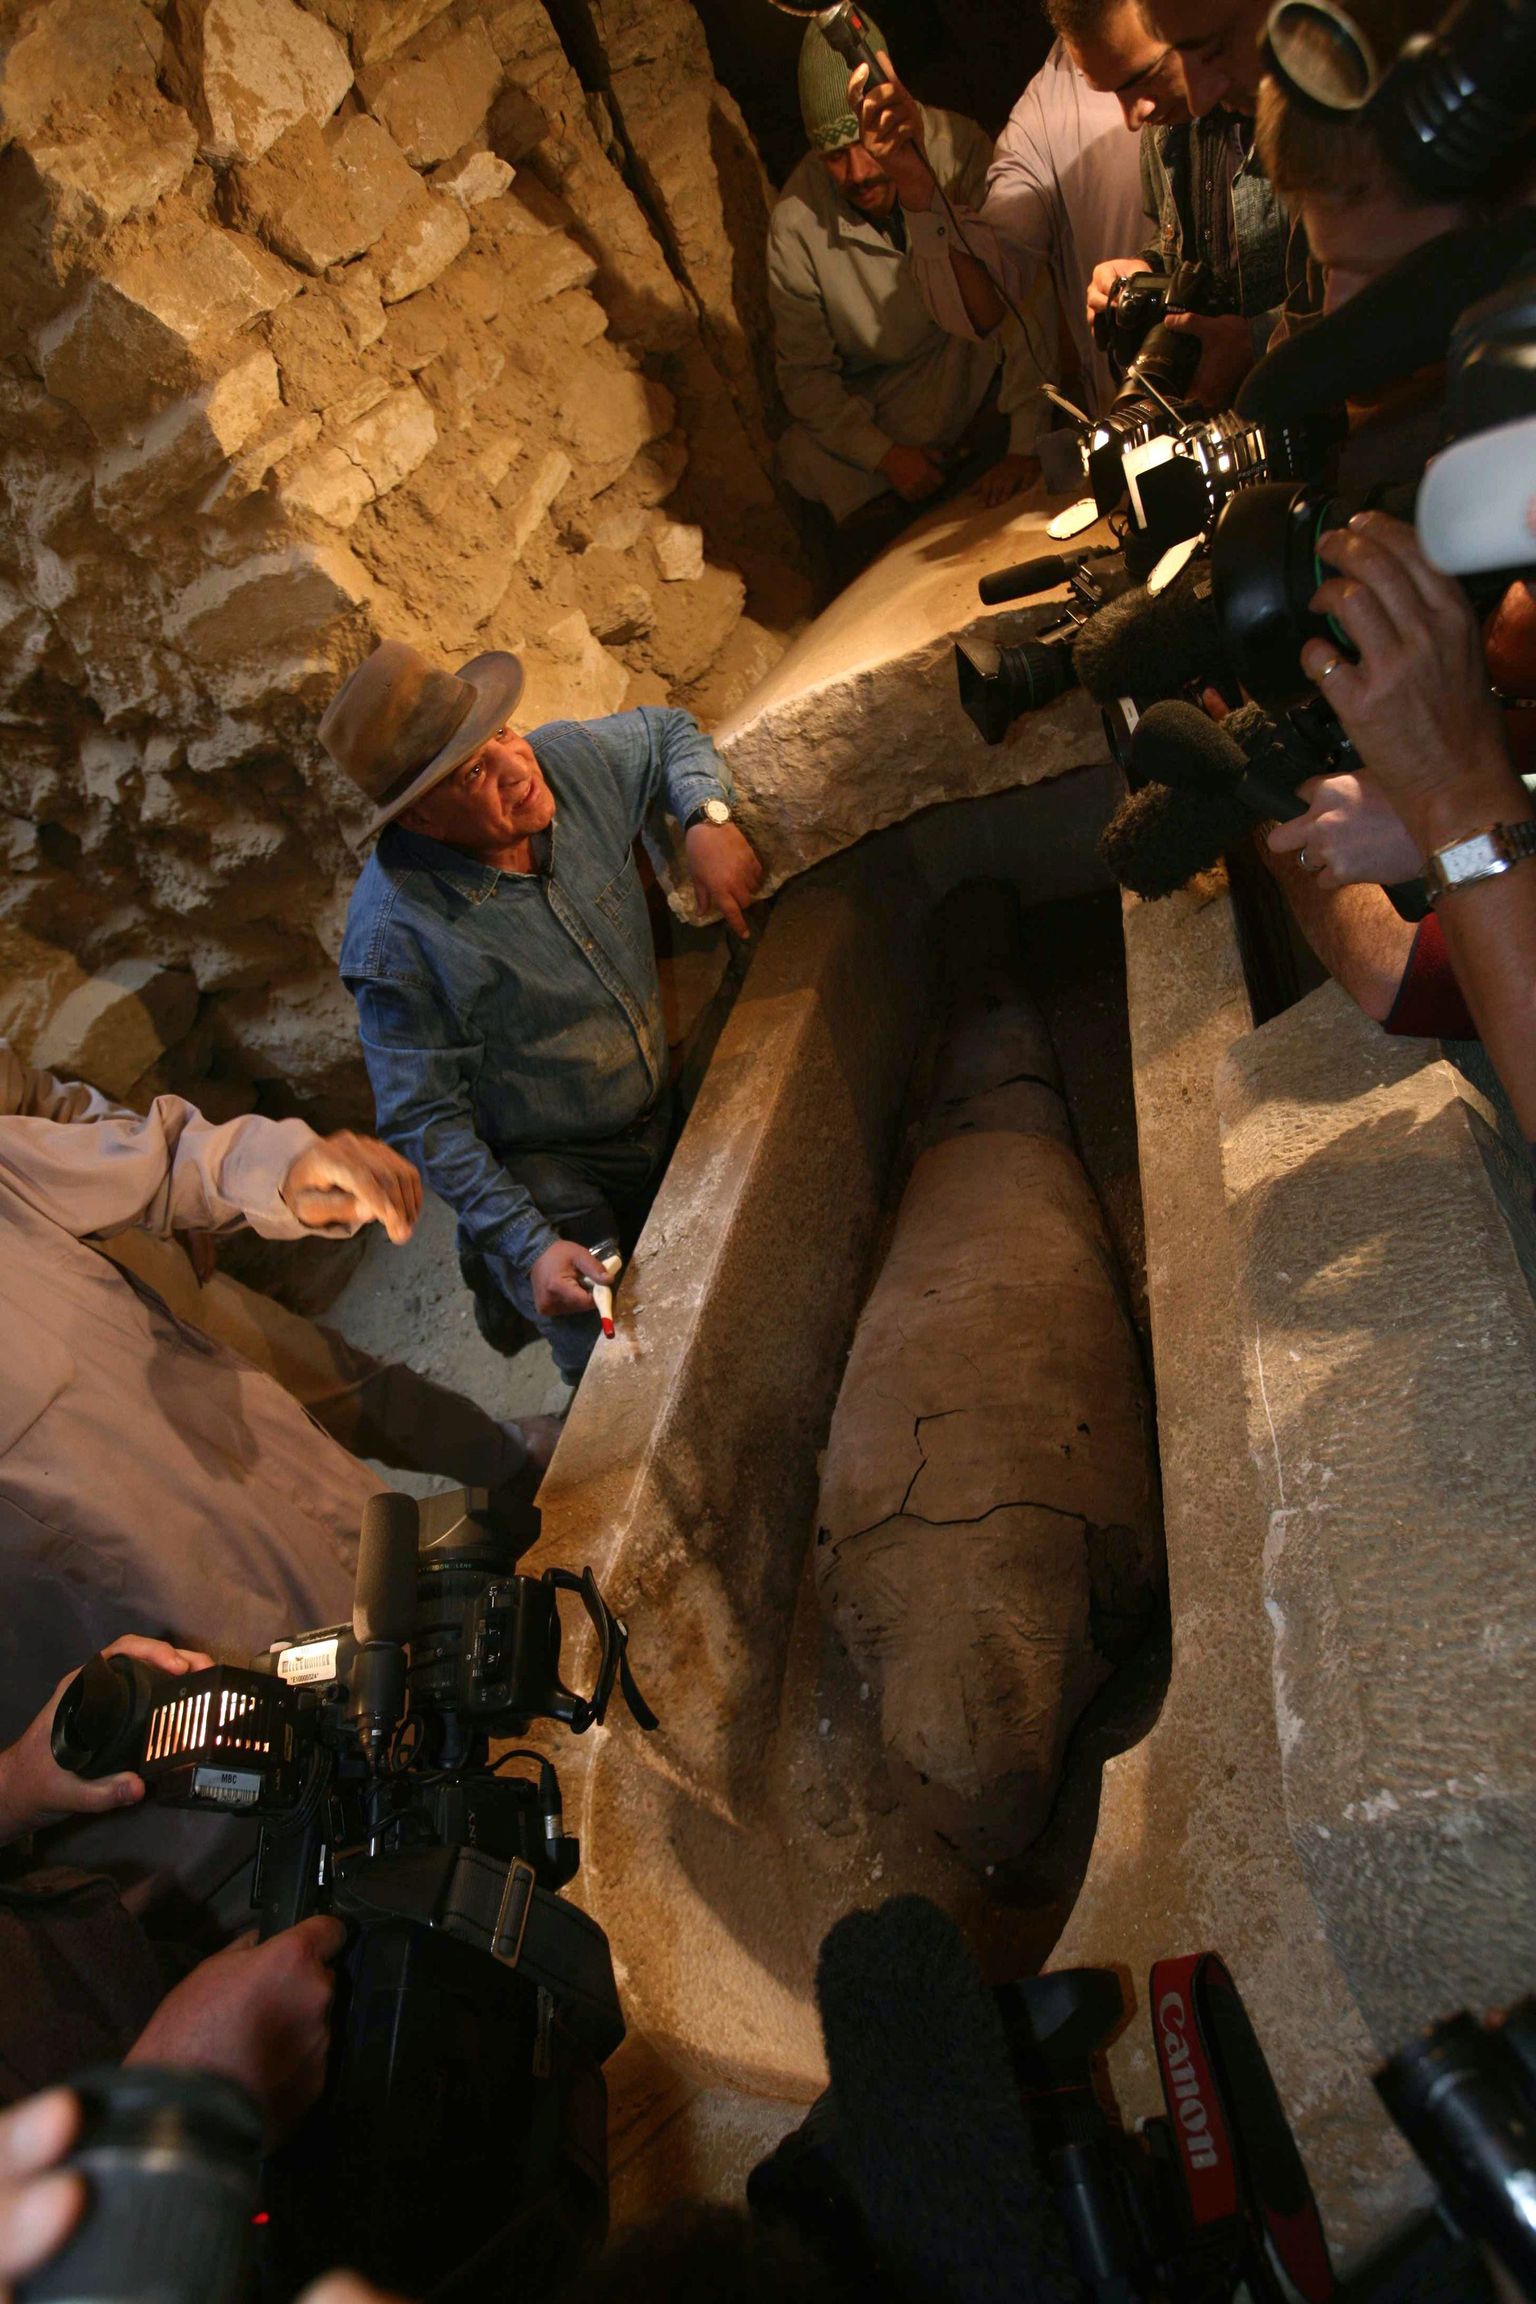 Egiptuse peaarheoloog Zahi Hawass uut muumialeidu tutvustamas